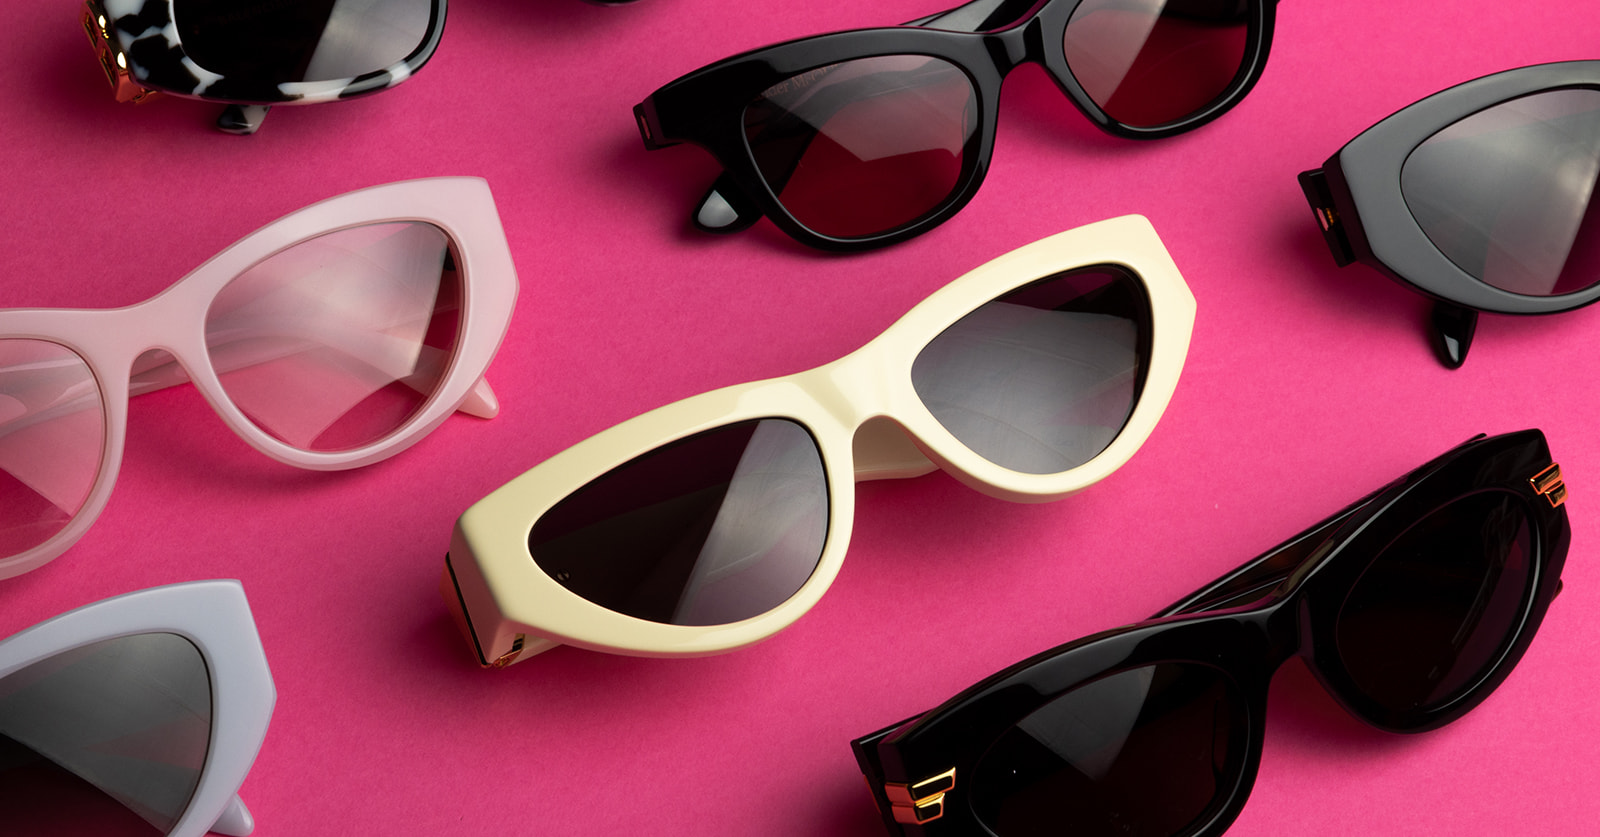 Forever trending: Cat-eye sunglasses